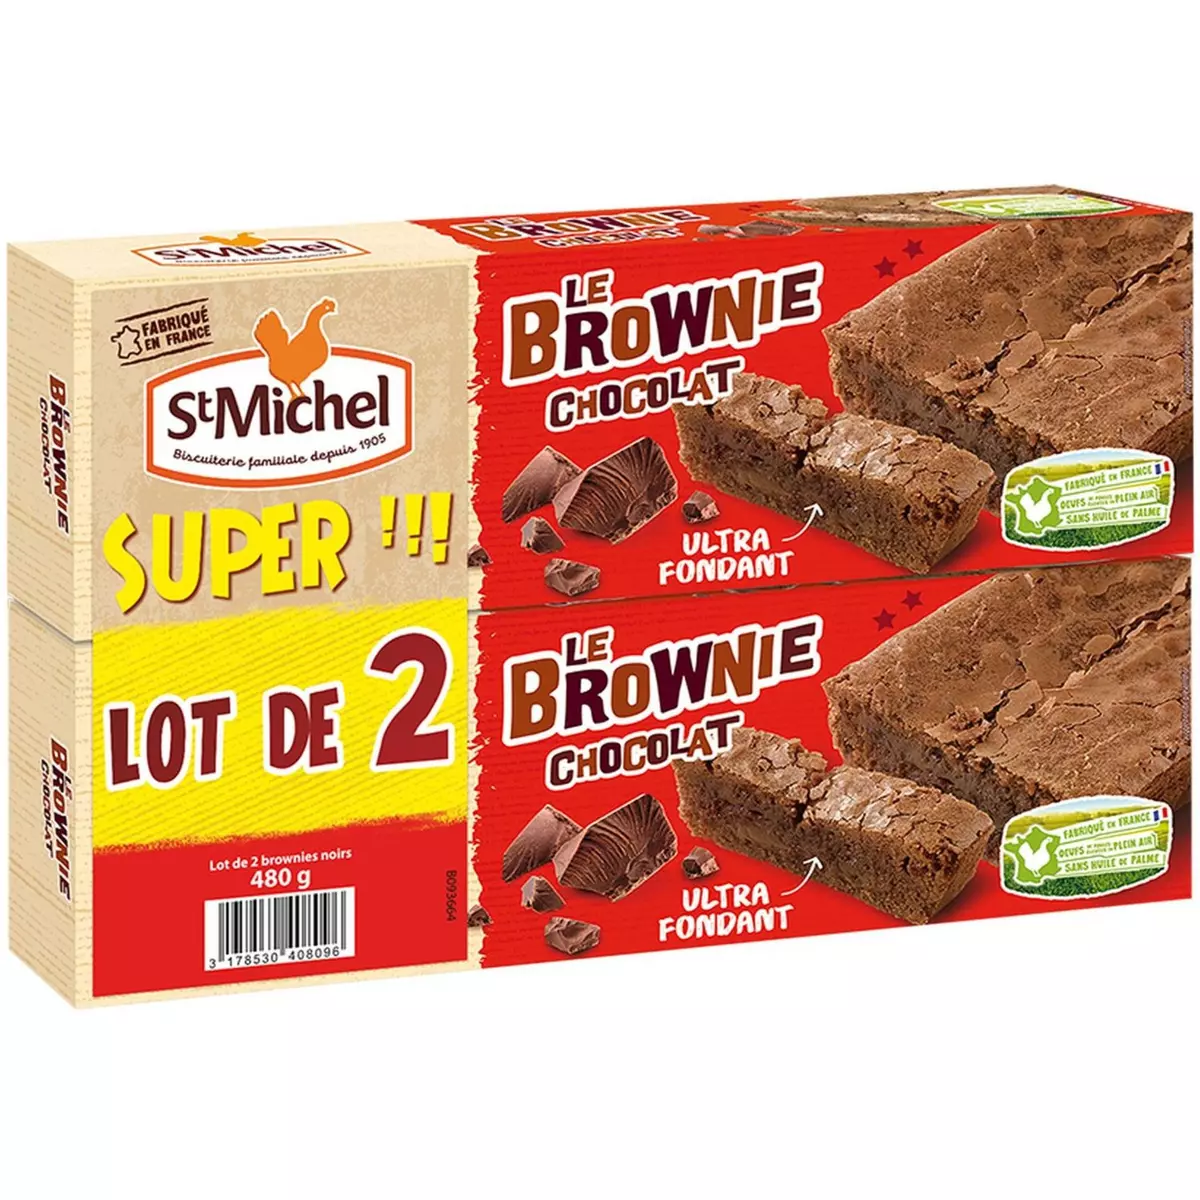 ST MICHEL Cocottes brownie au chocolat noir 2x240g